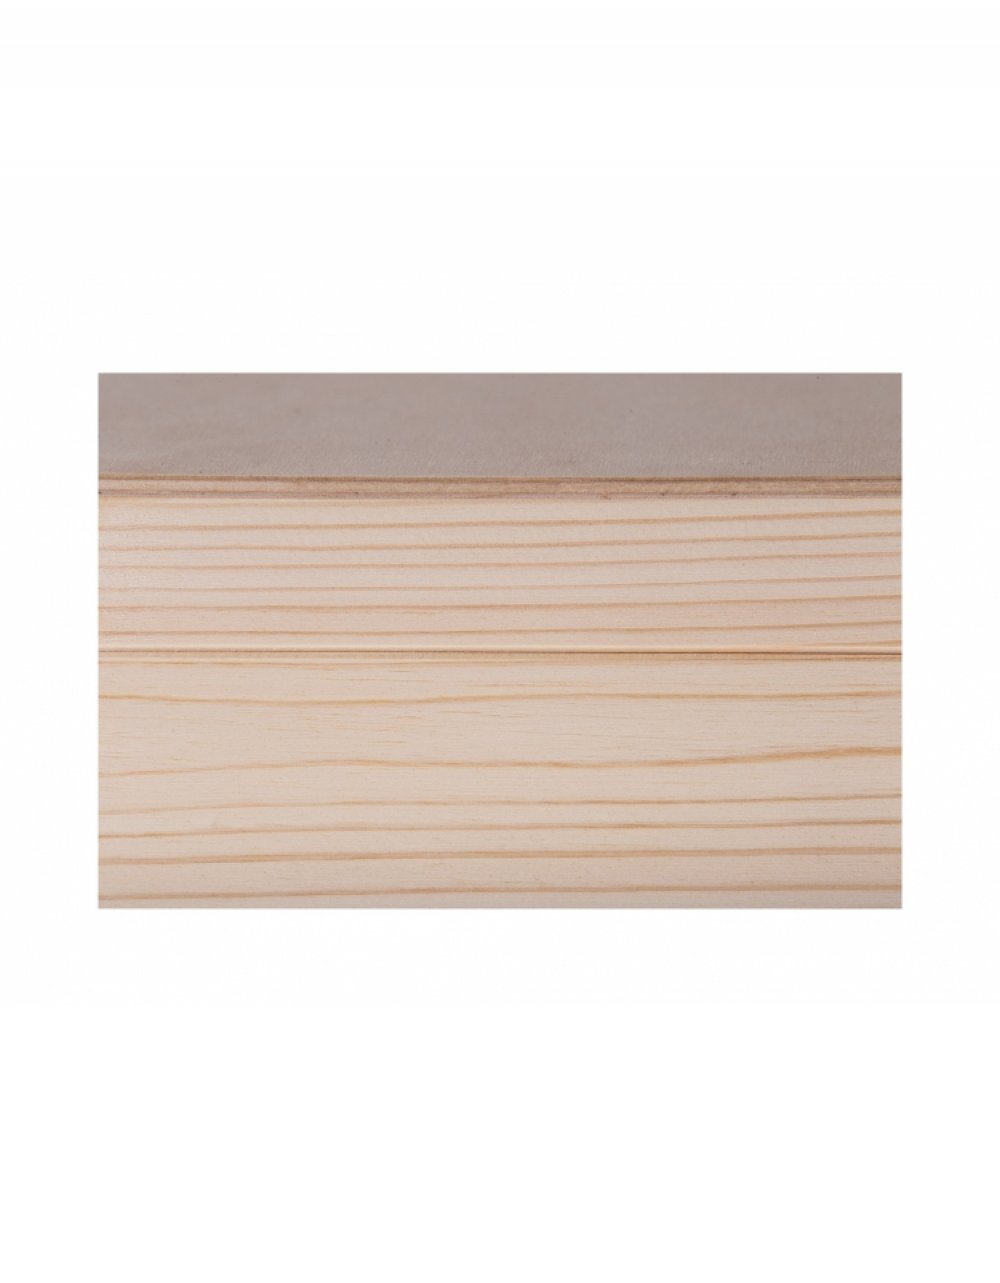 Přírodní dřevěná krabička 11x11x10,5 cm